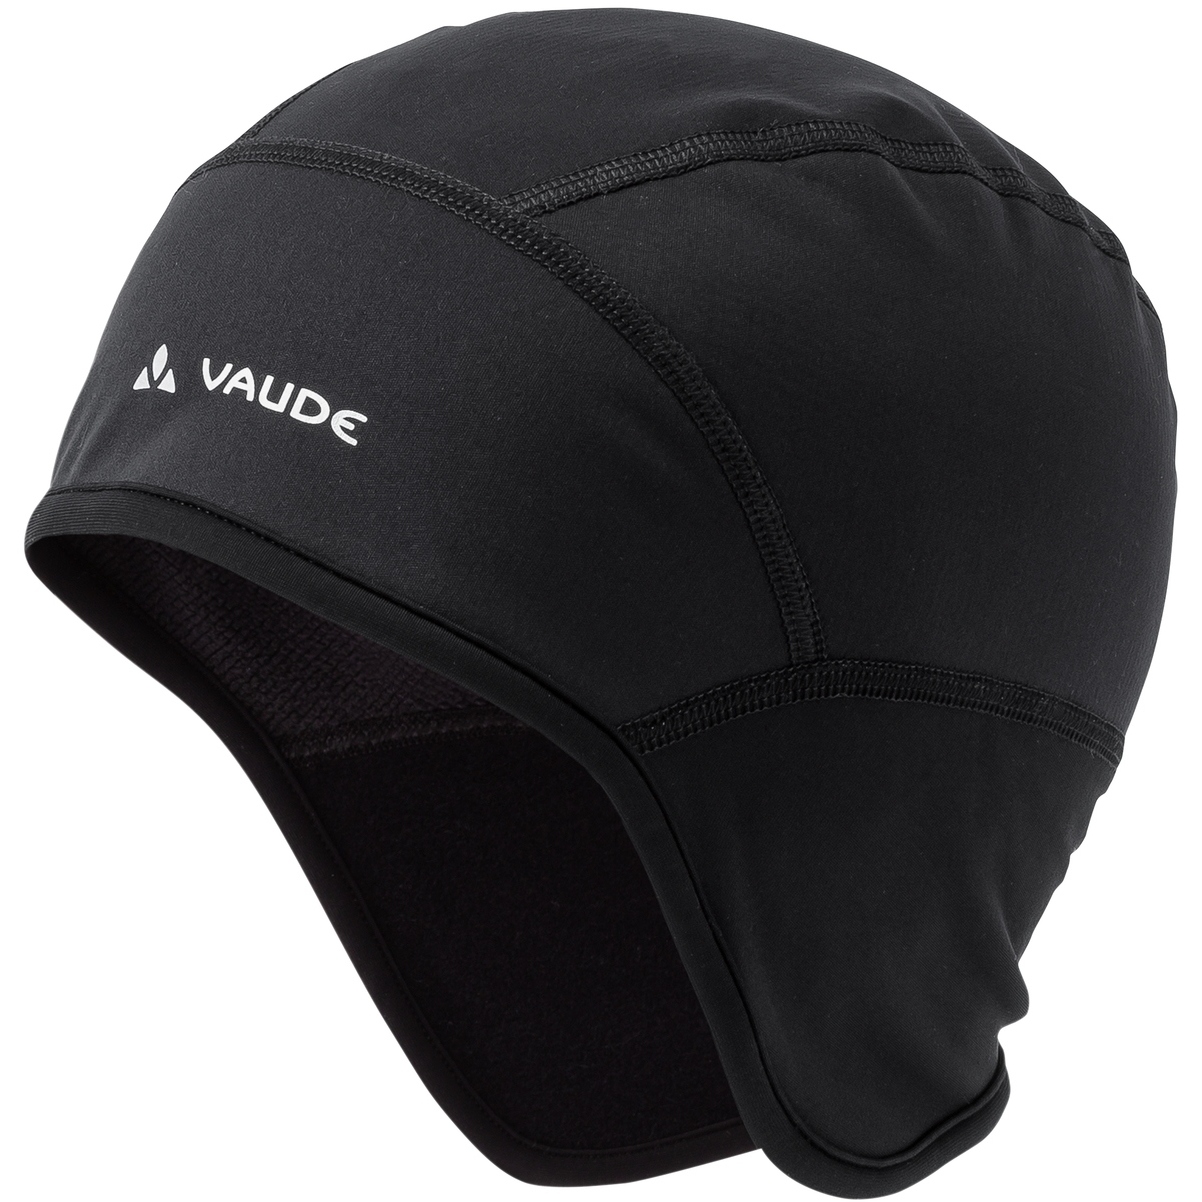 Productfoto van Vaude Bike Windproof Cap III - black uni